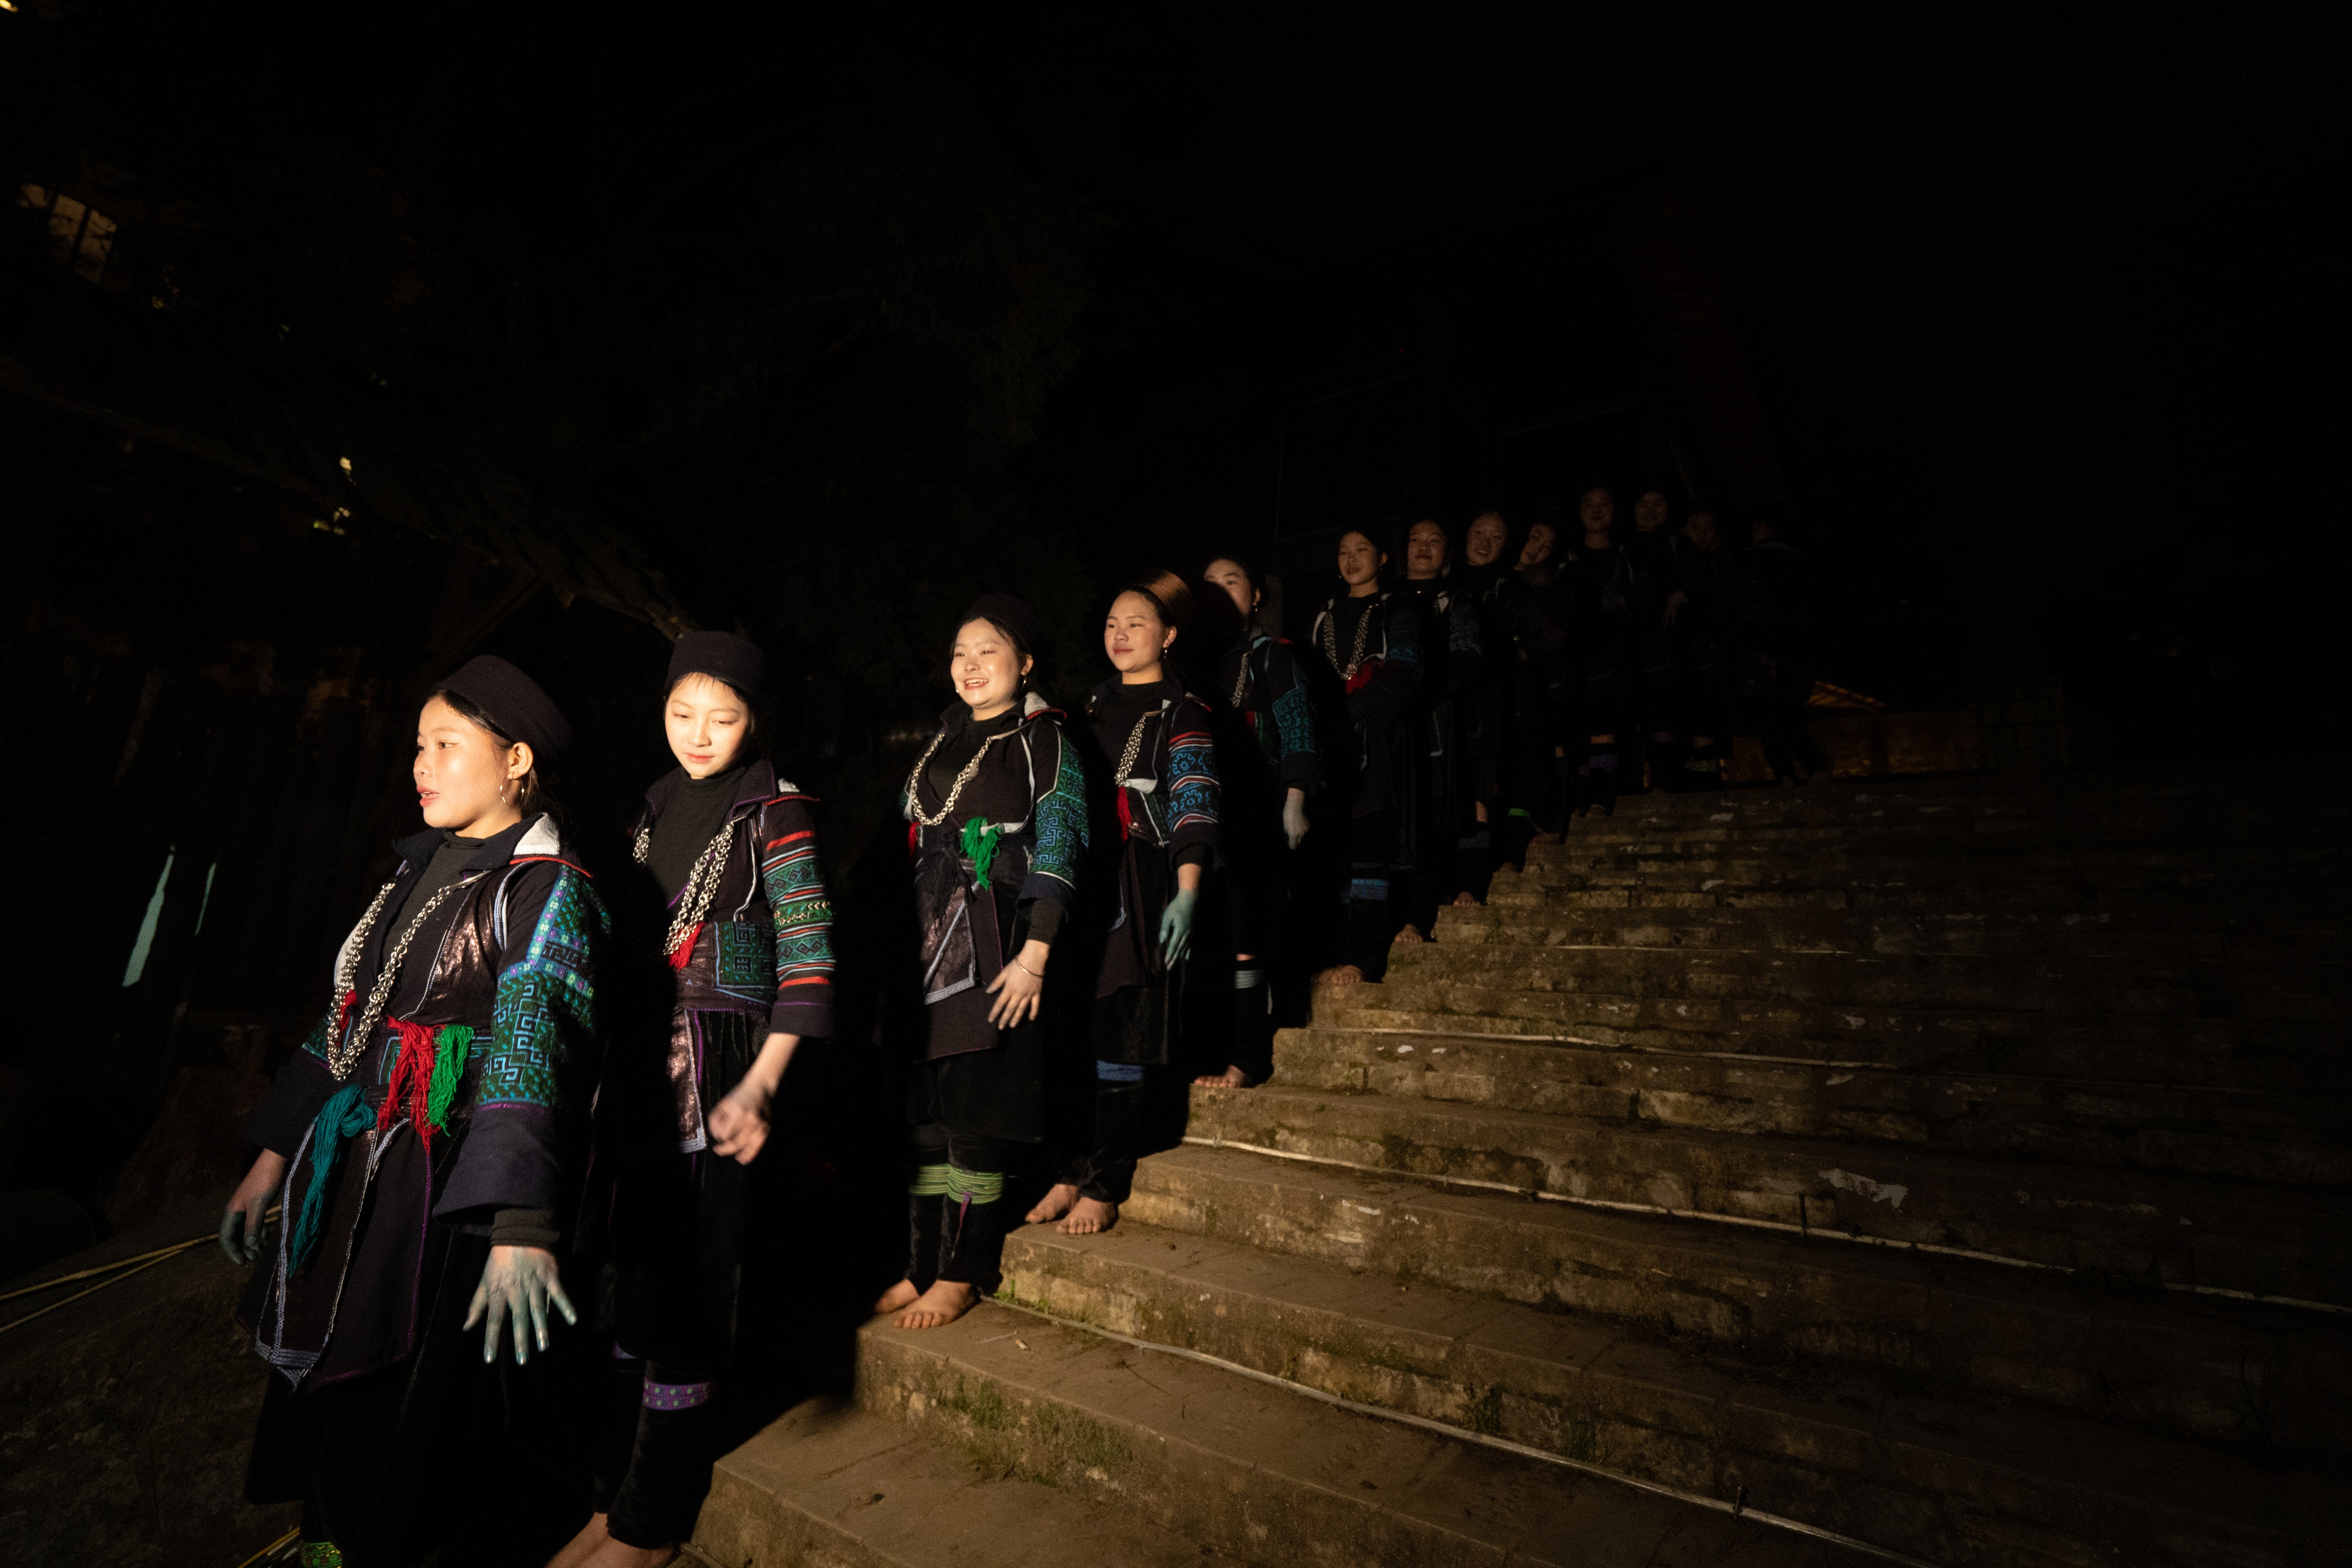 Nét đẹp văn hóa người Mông  trong vở thực cảnh The Mong show - 9